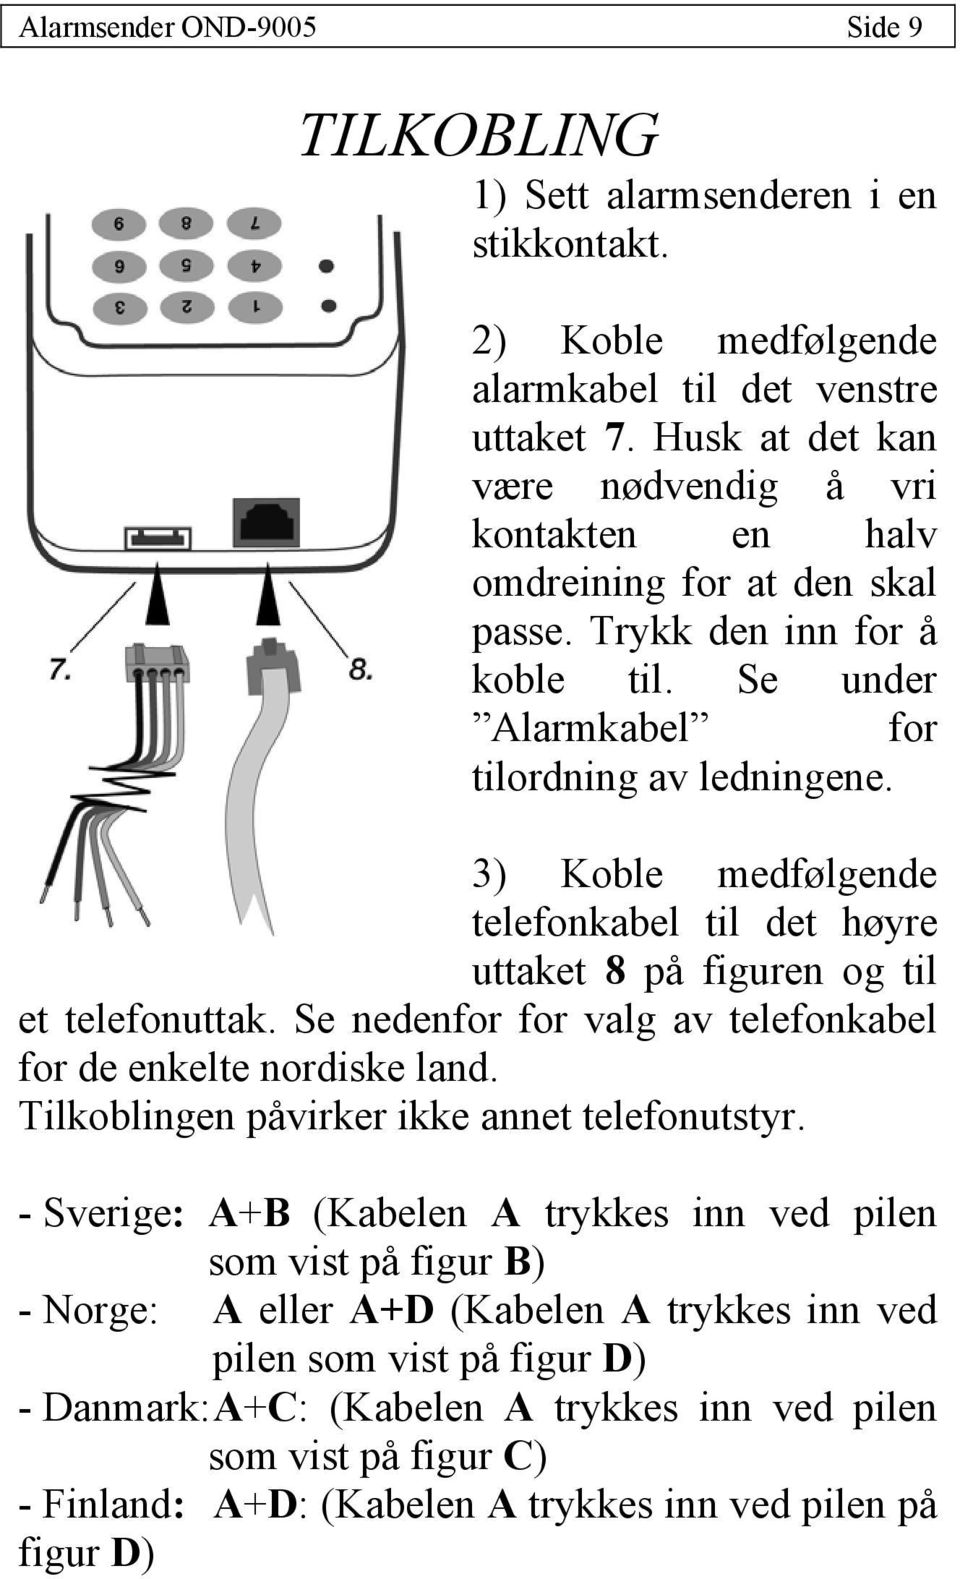 3) Koble medfølgende telefonkabel til det høyre uttaket 8 på figuren og til et telefonuttak. Se nedenfor for valg av telefonkabel for de enkelte nordiske land.